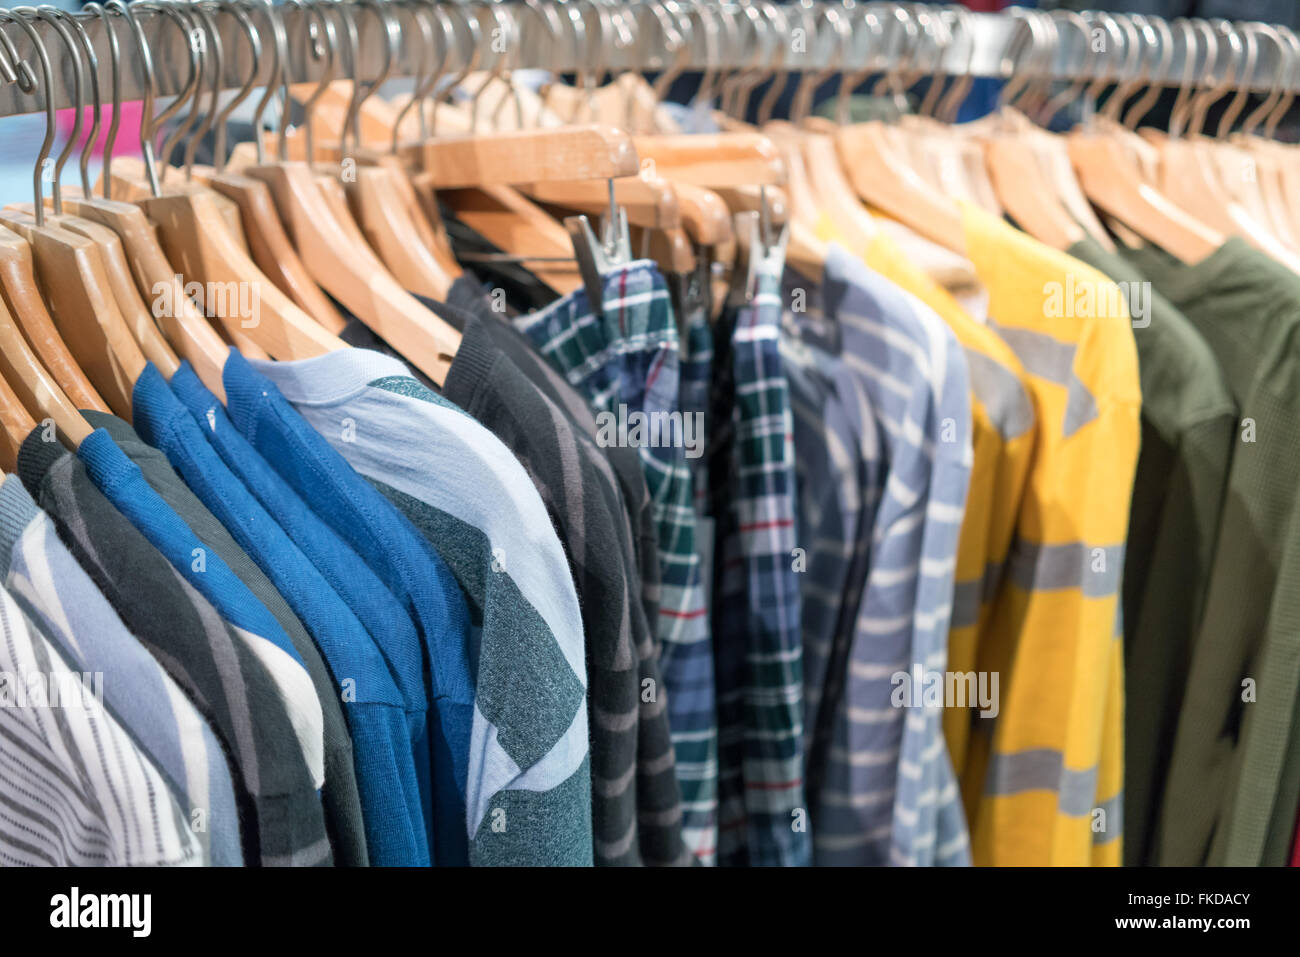 Rampa di vestiti appesi in negozio di abbigliamento Foto Stock